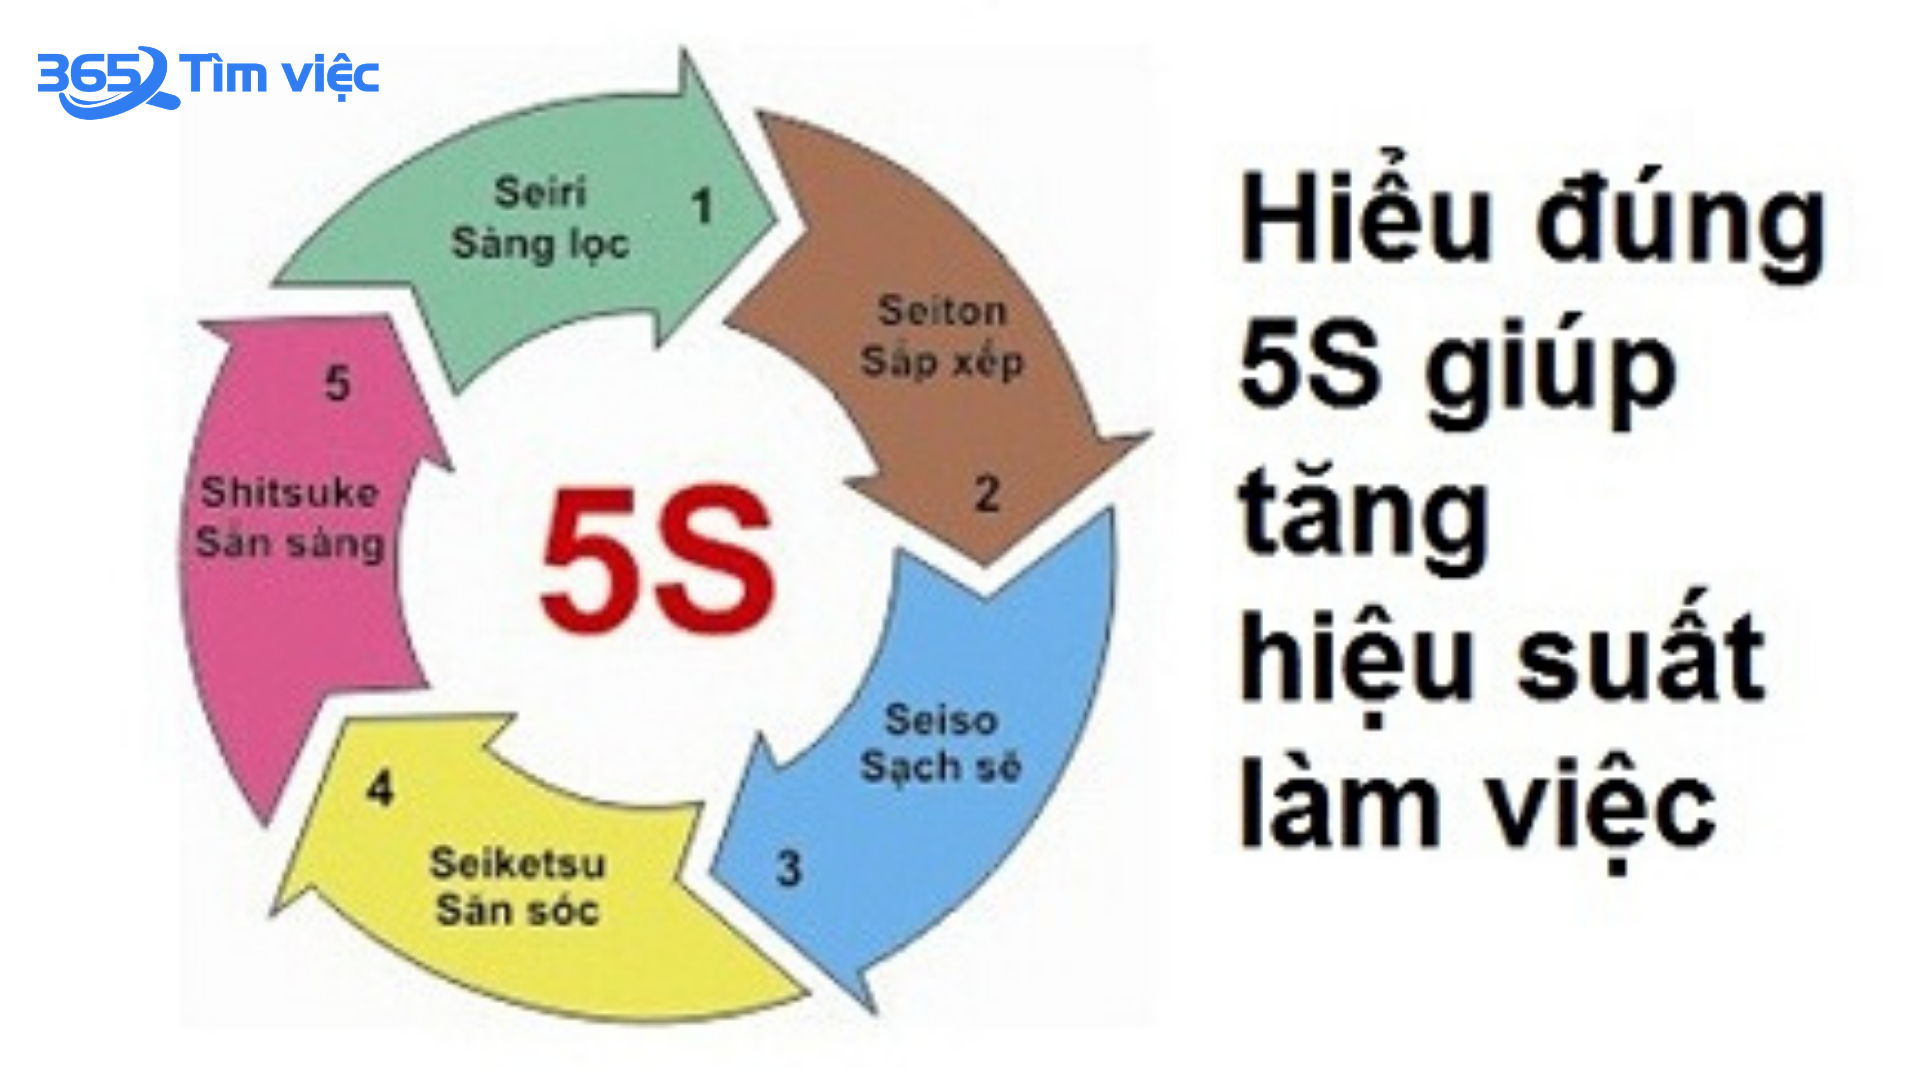 Tiêu chuẩn 5S là gì? Hướng dẫn chi tiết và lợi ích của phương pháp 5S